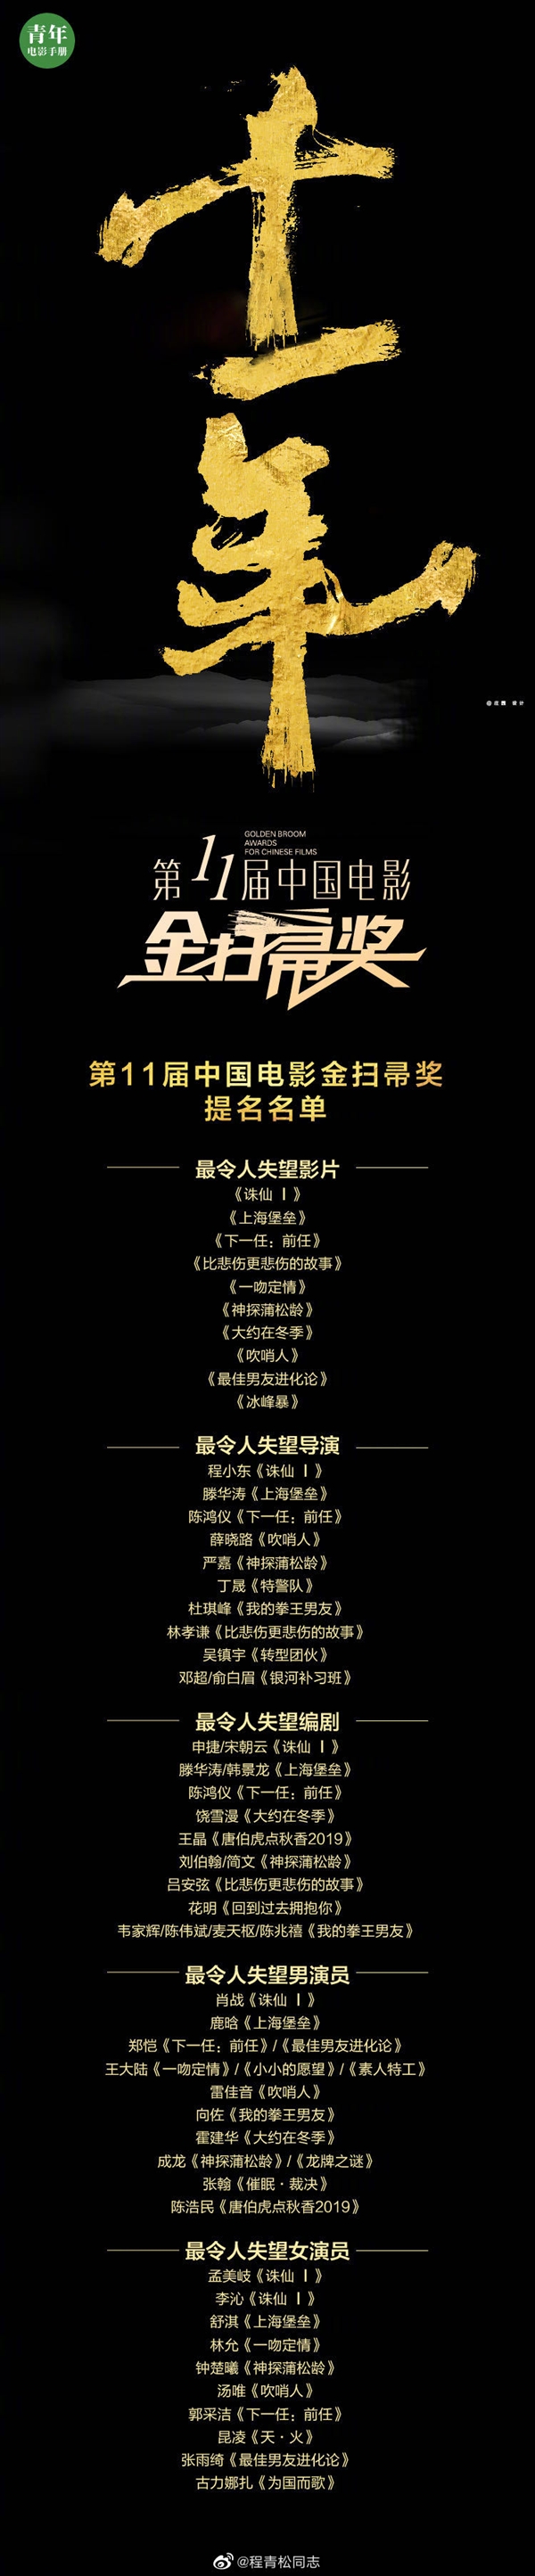 金扫帚奖将线上直播：《上海堡垒》提名年度最差影片